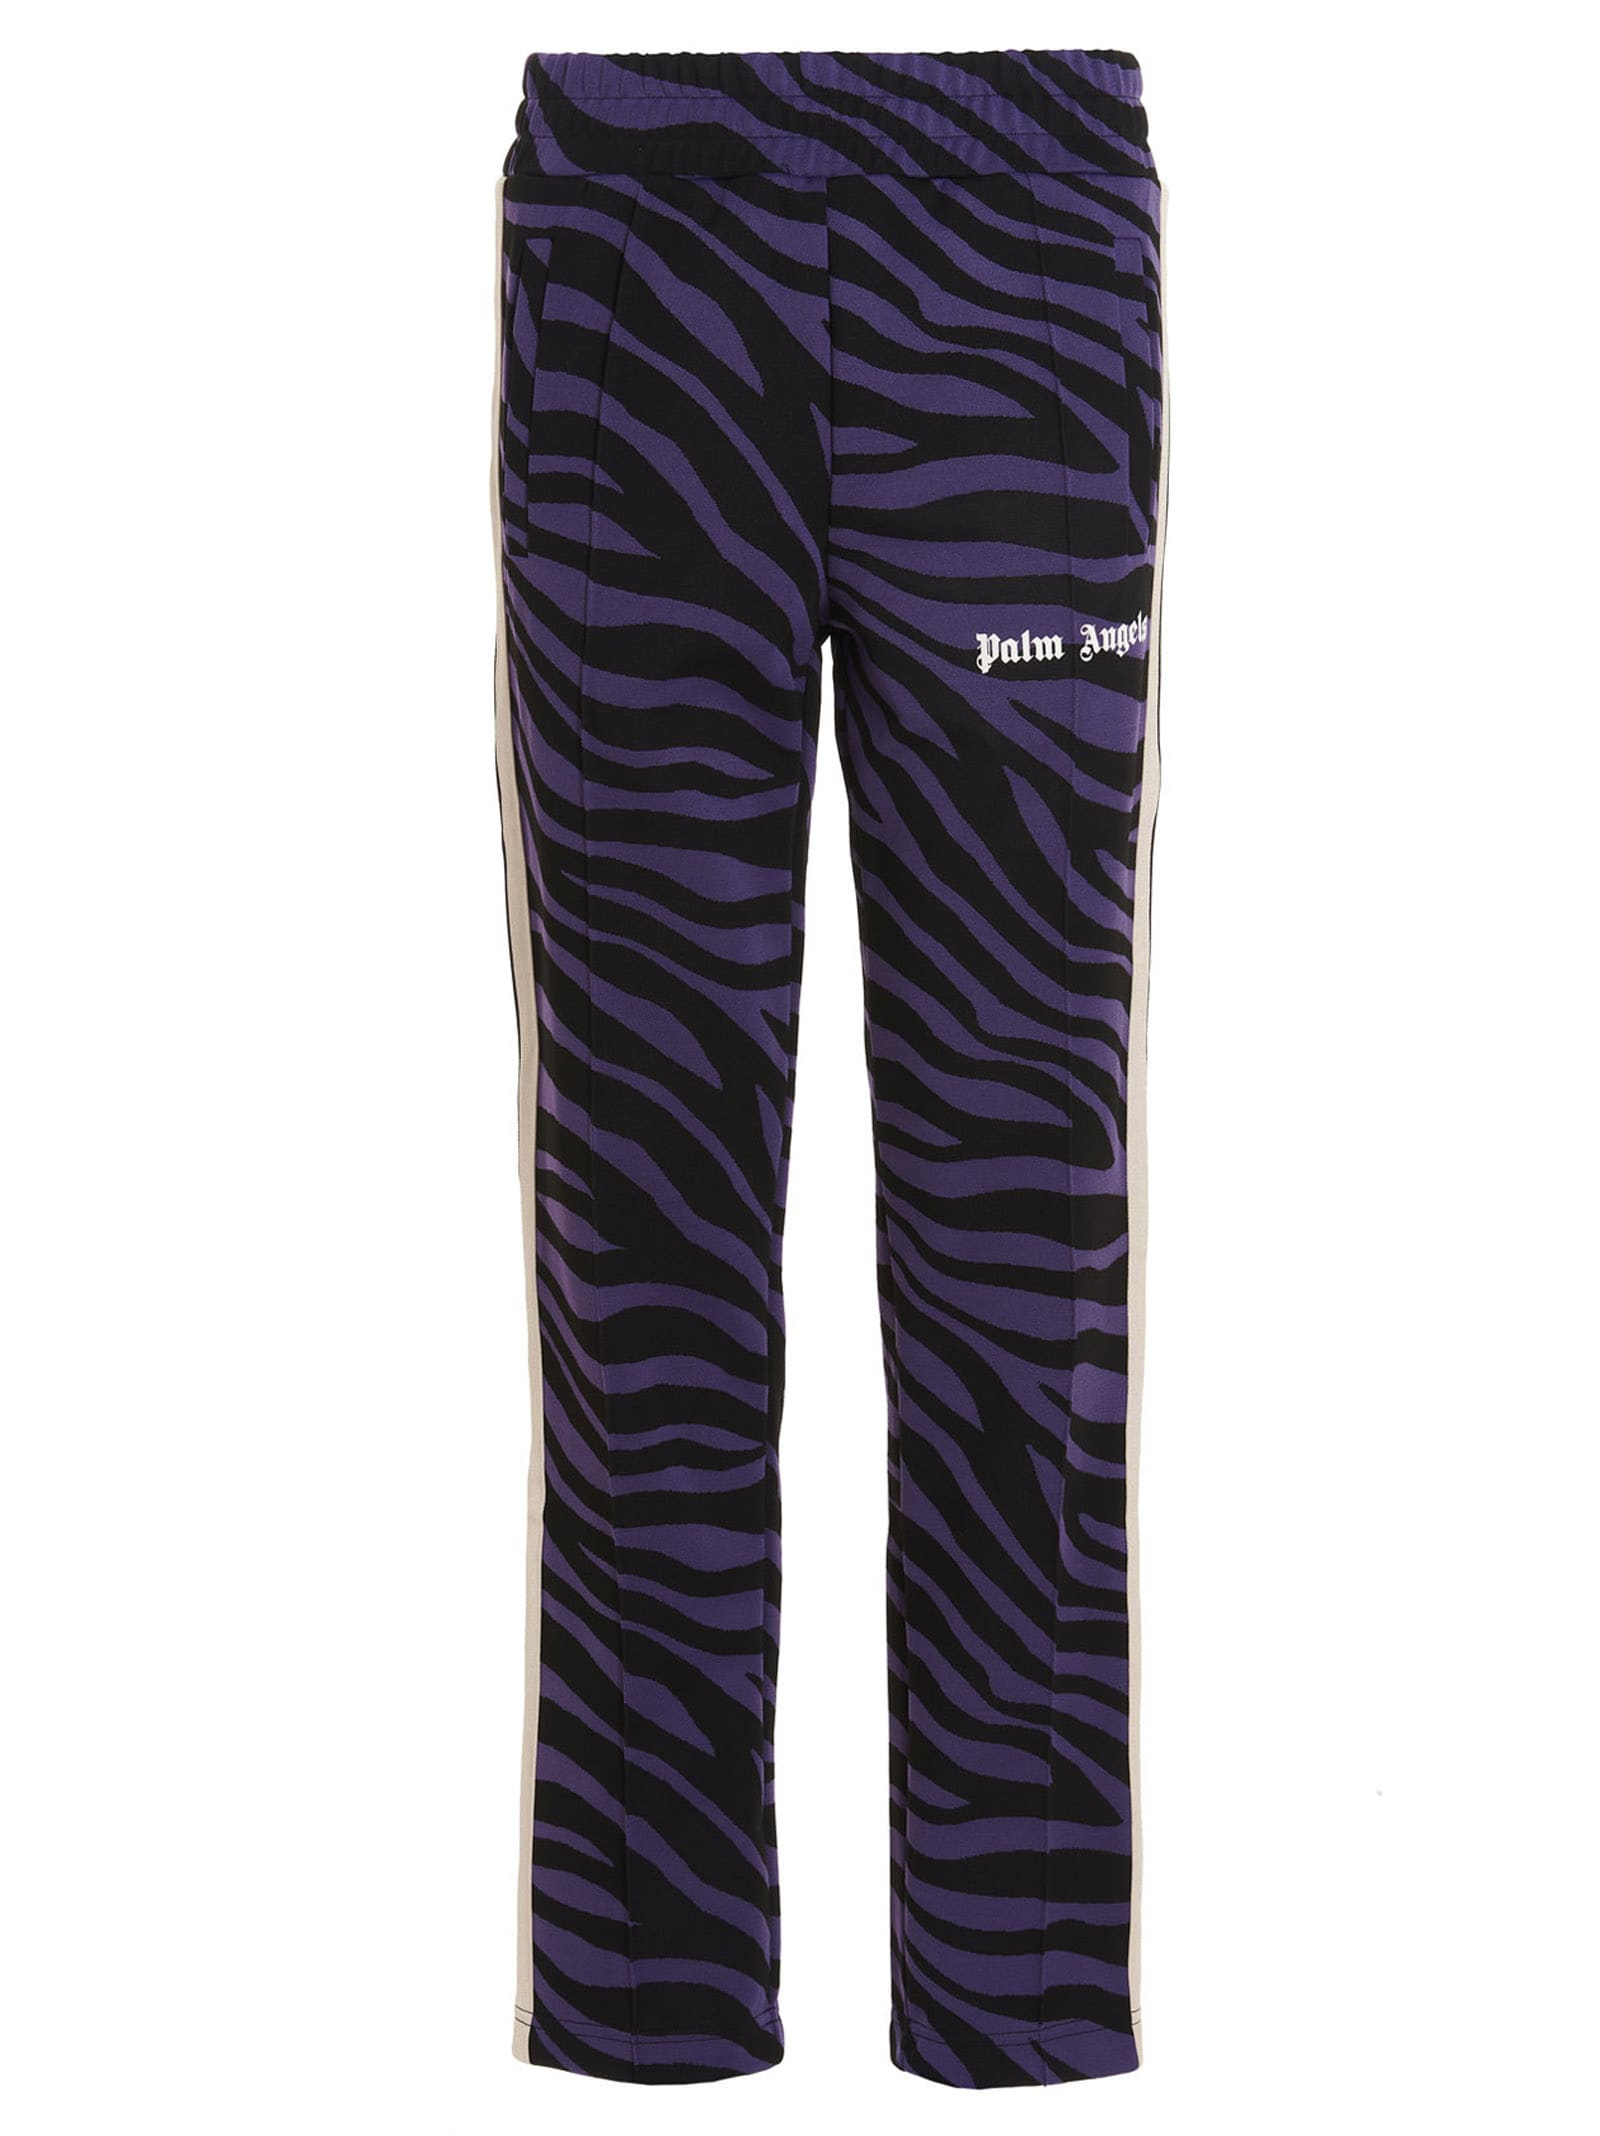 Palm Angels Zebra Pants